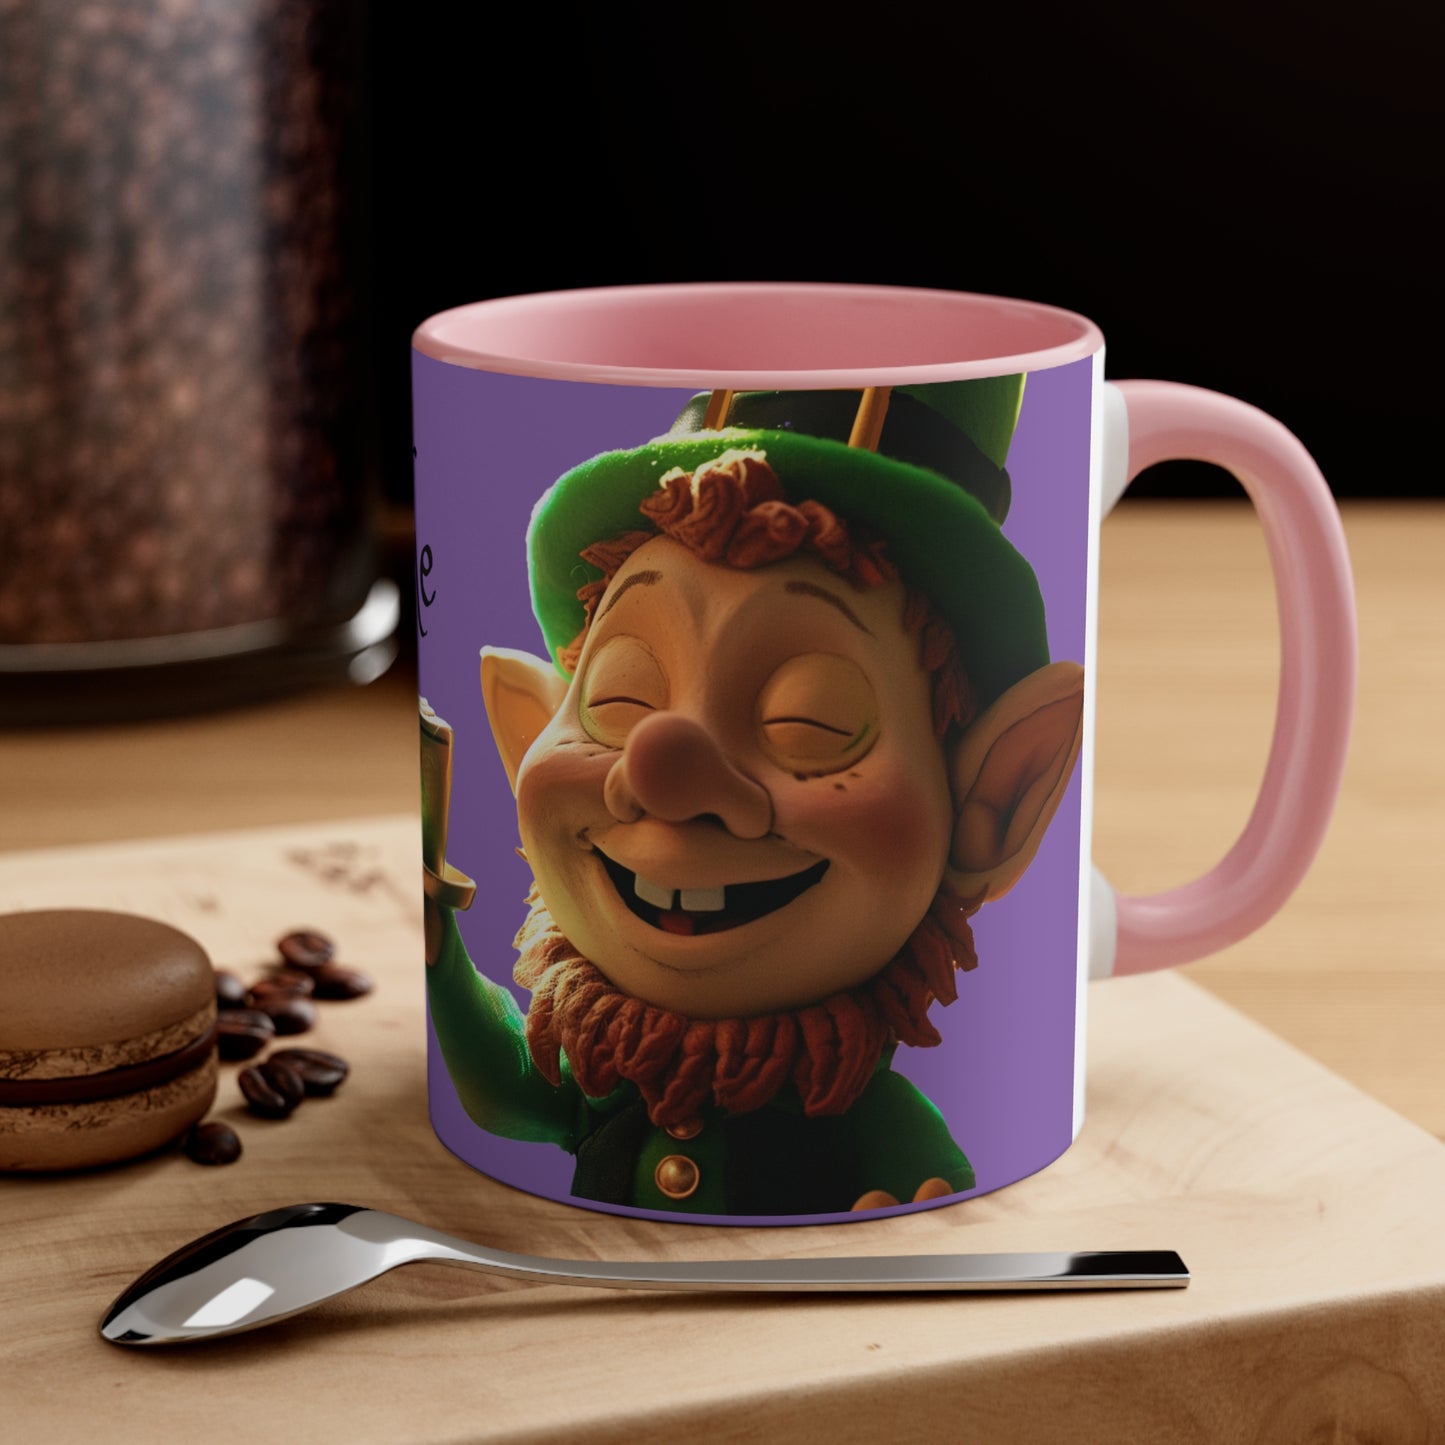 Cup O' The Mornin'